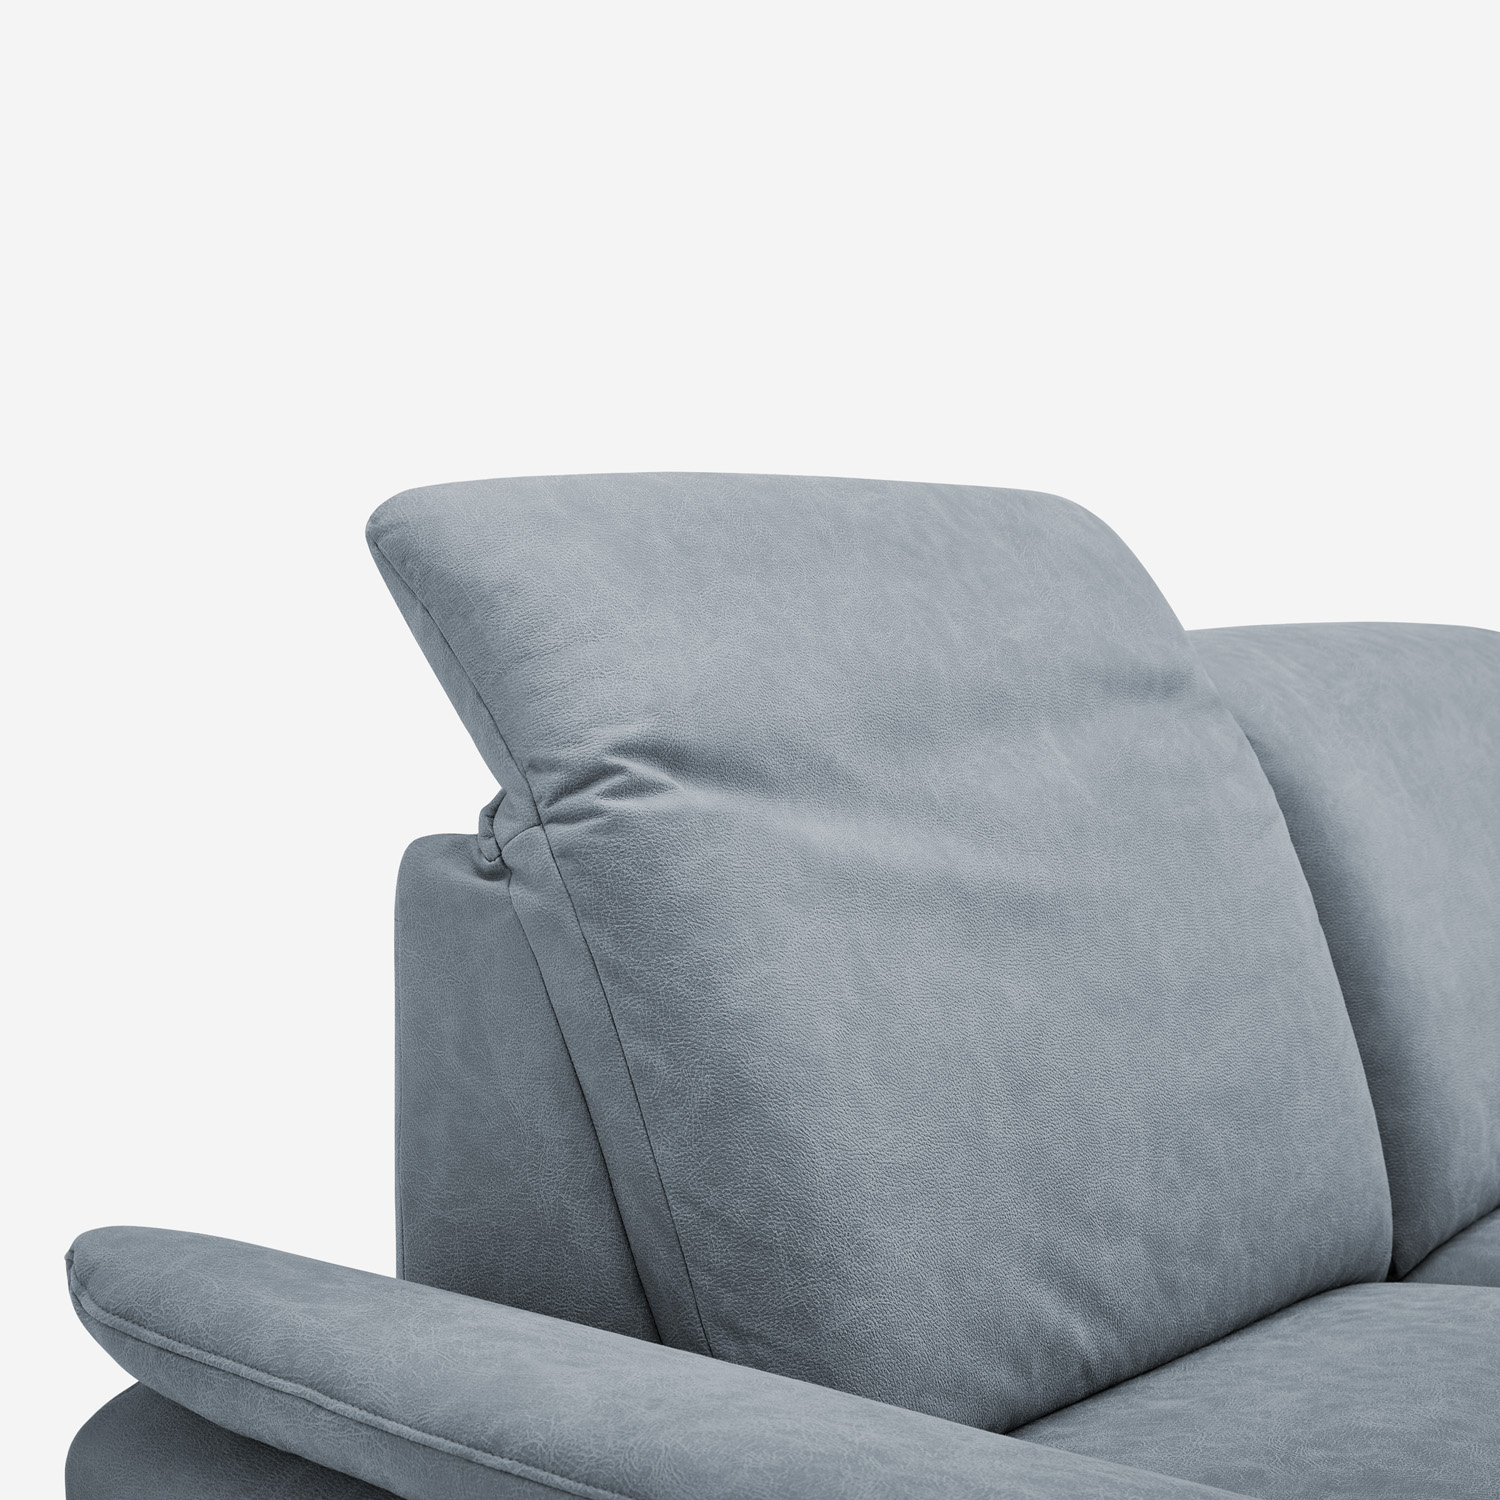 2-Sitzer Sofa Nell Steel - Calizza Interiors | Ecksofas